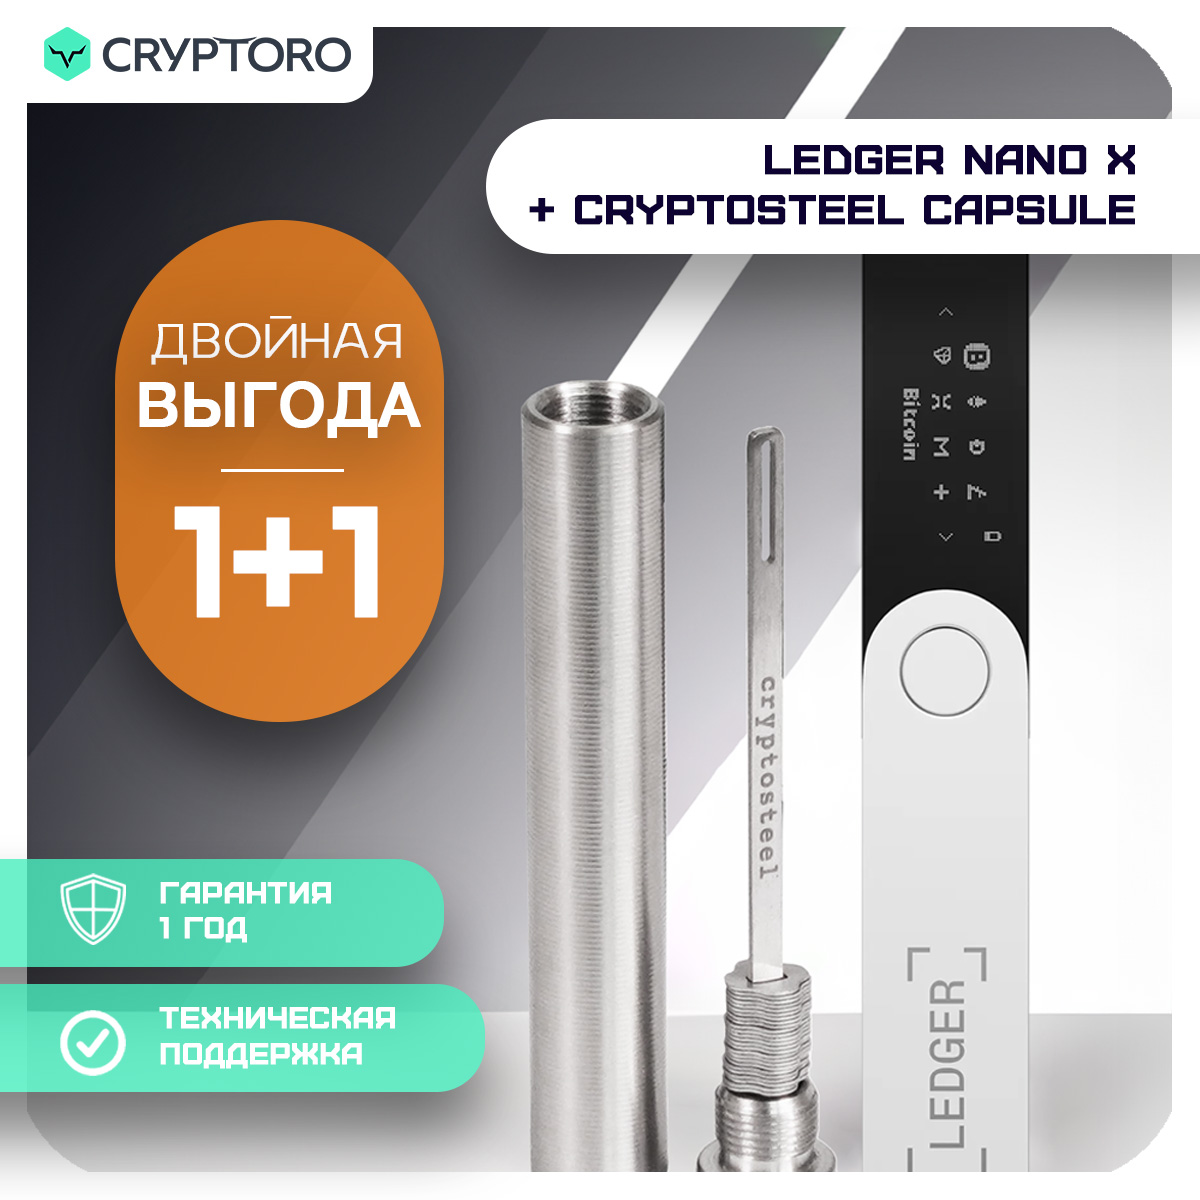 Набор Ledger Nano X + Cryptosteel Capsule из аппаратного кошелька и устройства seed